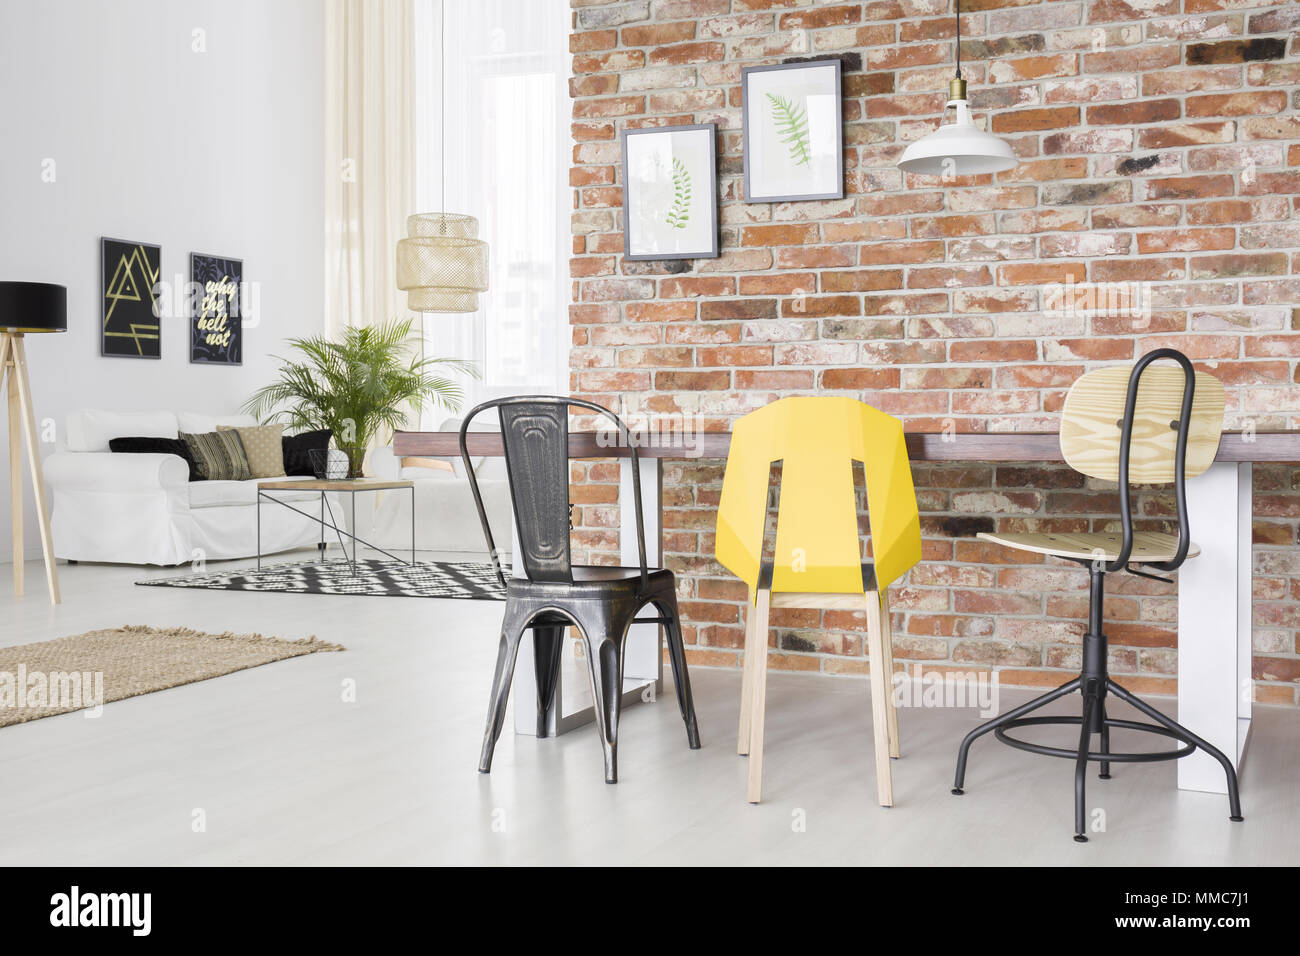 Appartement moderne avec mur de brique, table à manger, chaise et canapé Banque D'Images